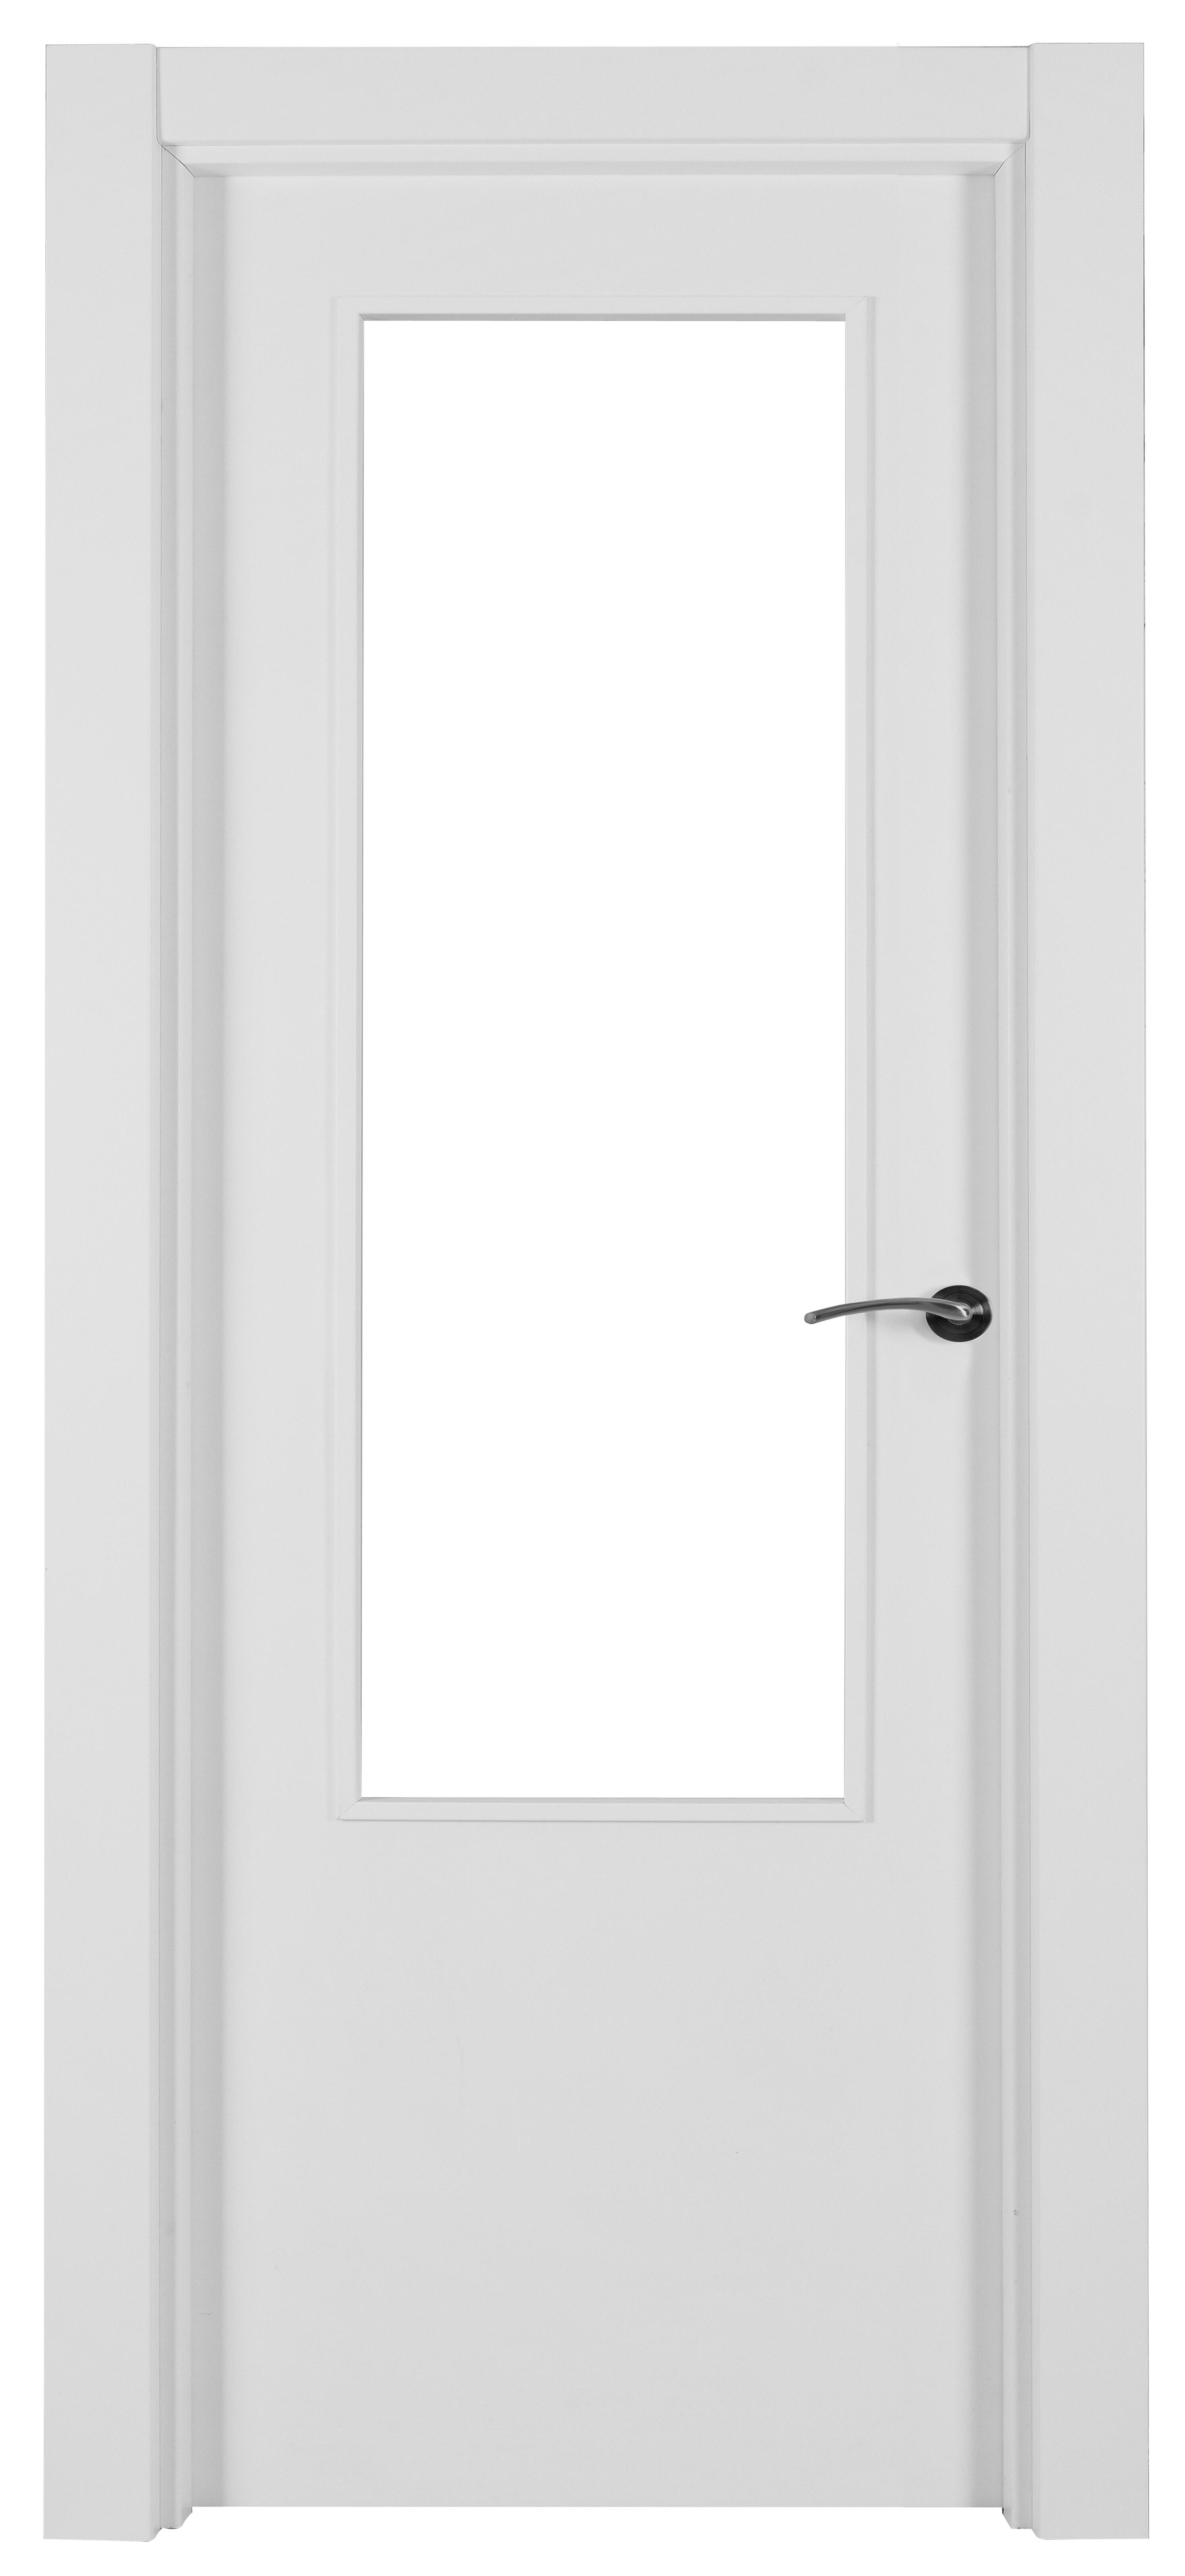 Puerta abatible lyon blanca aero blanco izquierda con cristal de 110x30 y 72.5cm